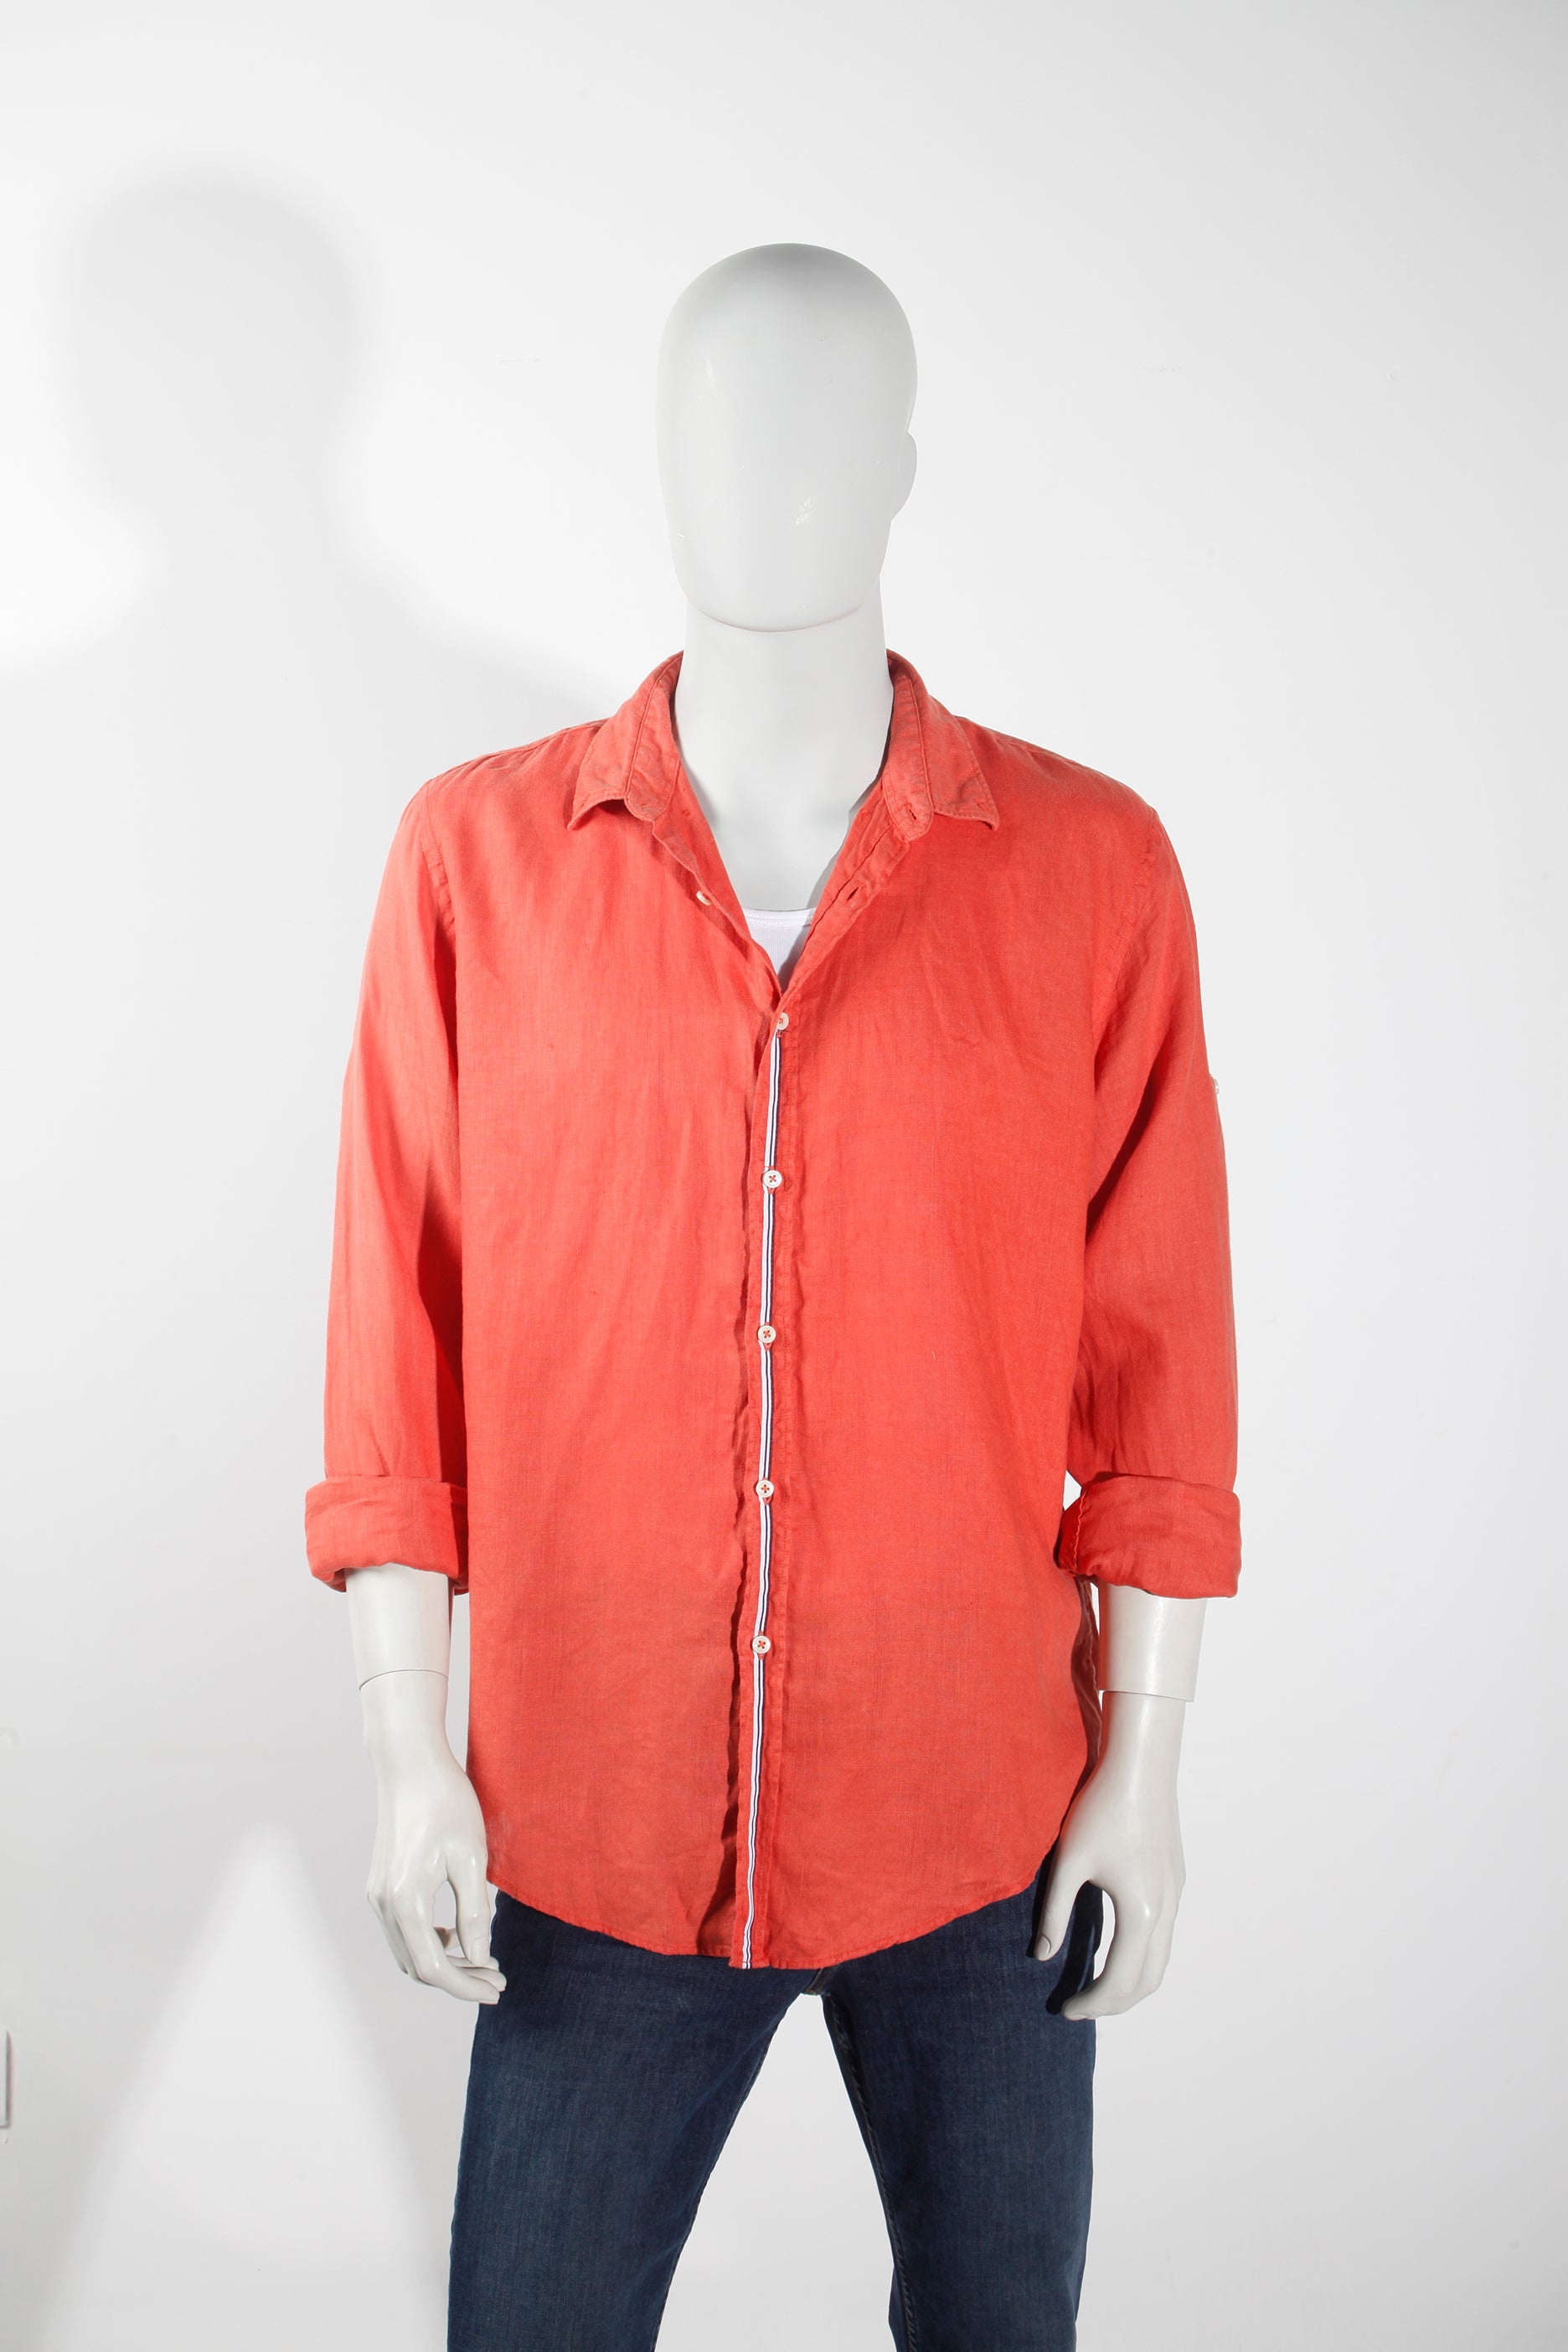 Zara Men's Orange Linen Shirt (XLarge)